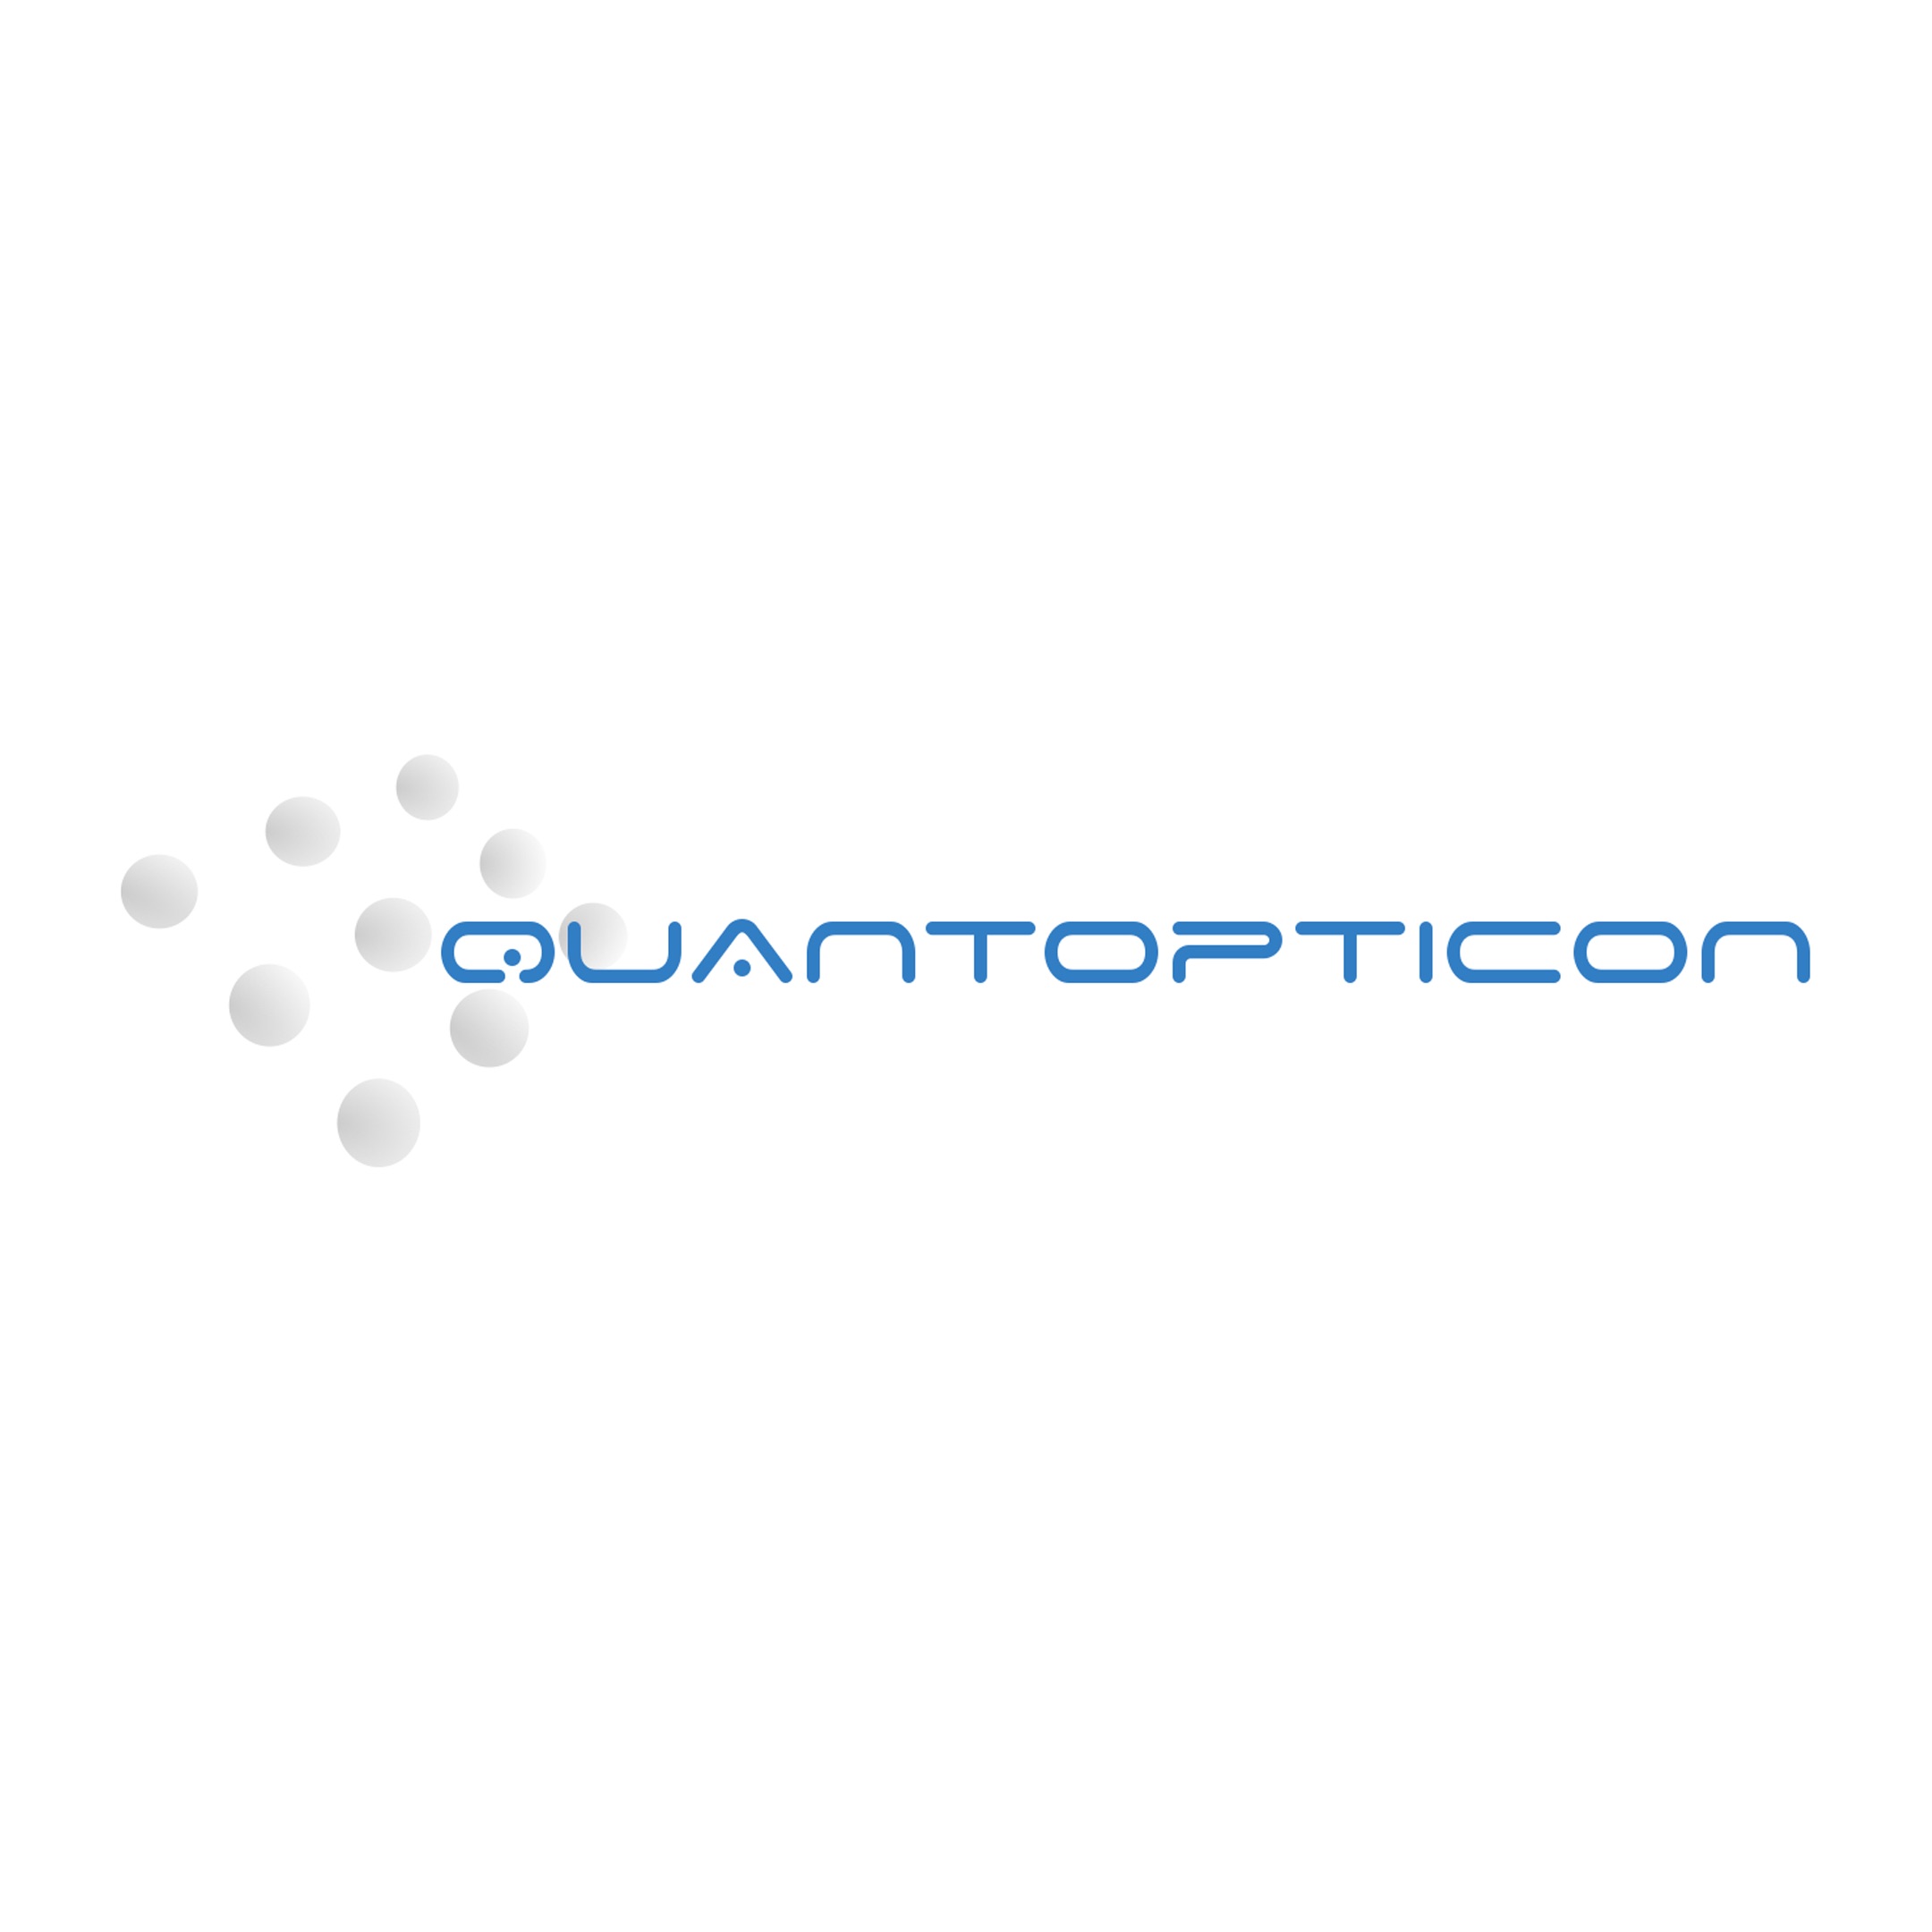 Quantopicon logo